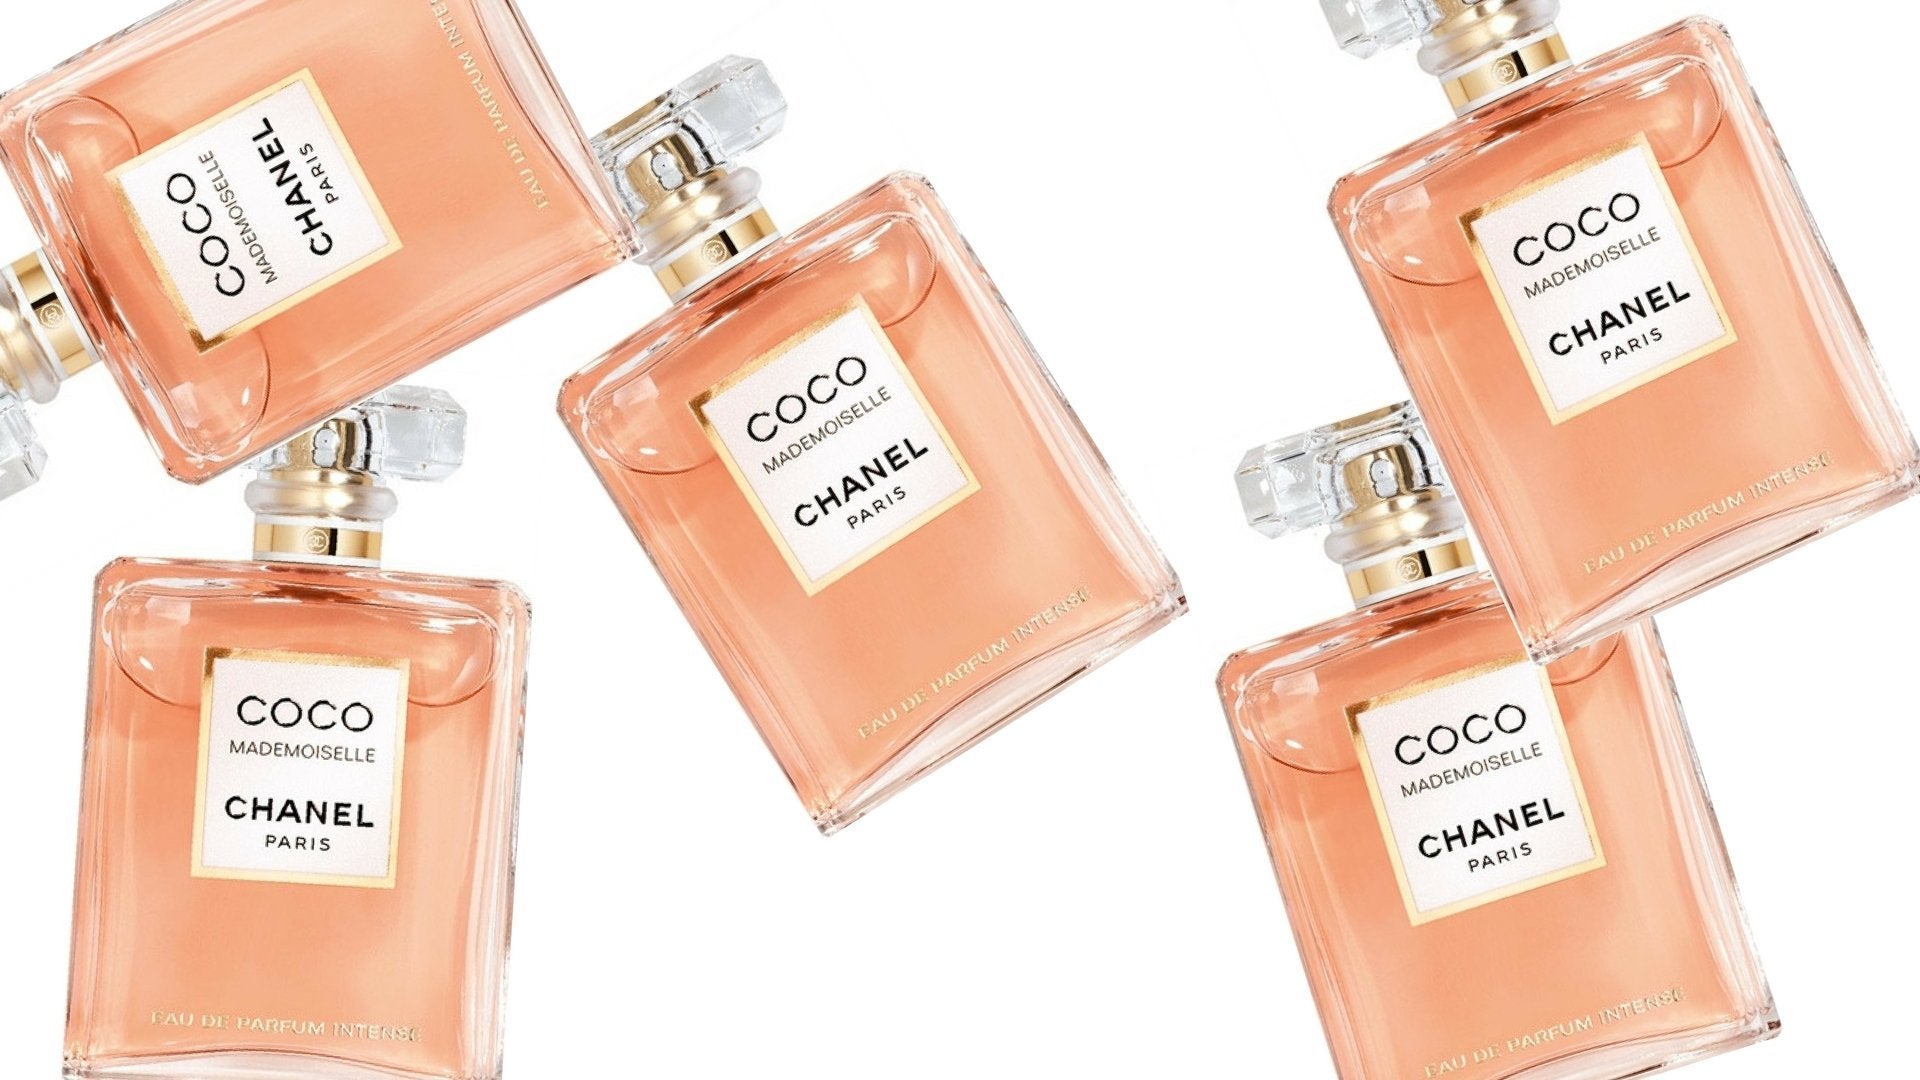 Chanel Coco Mademoiselle Eau de Parfum Intense Review